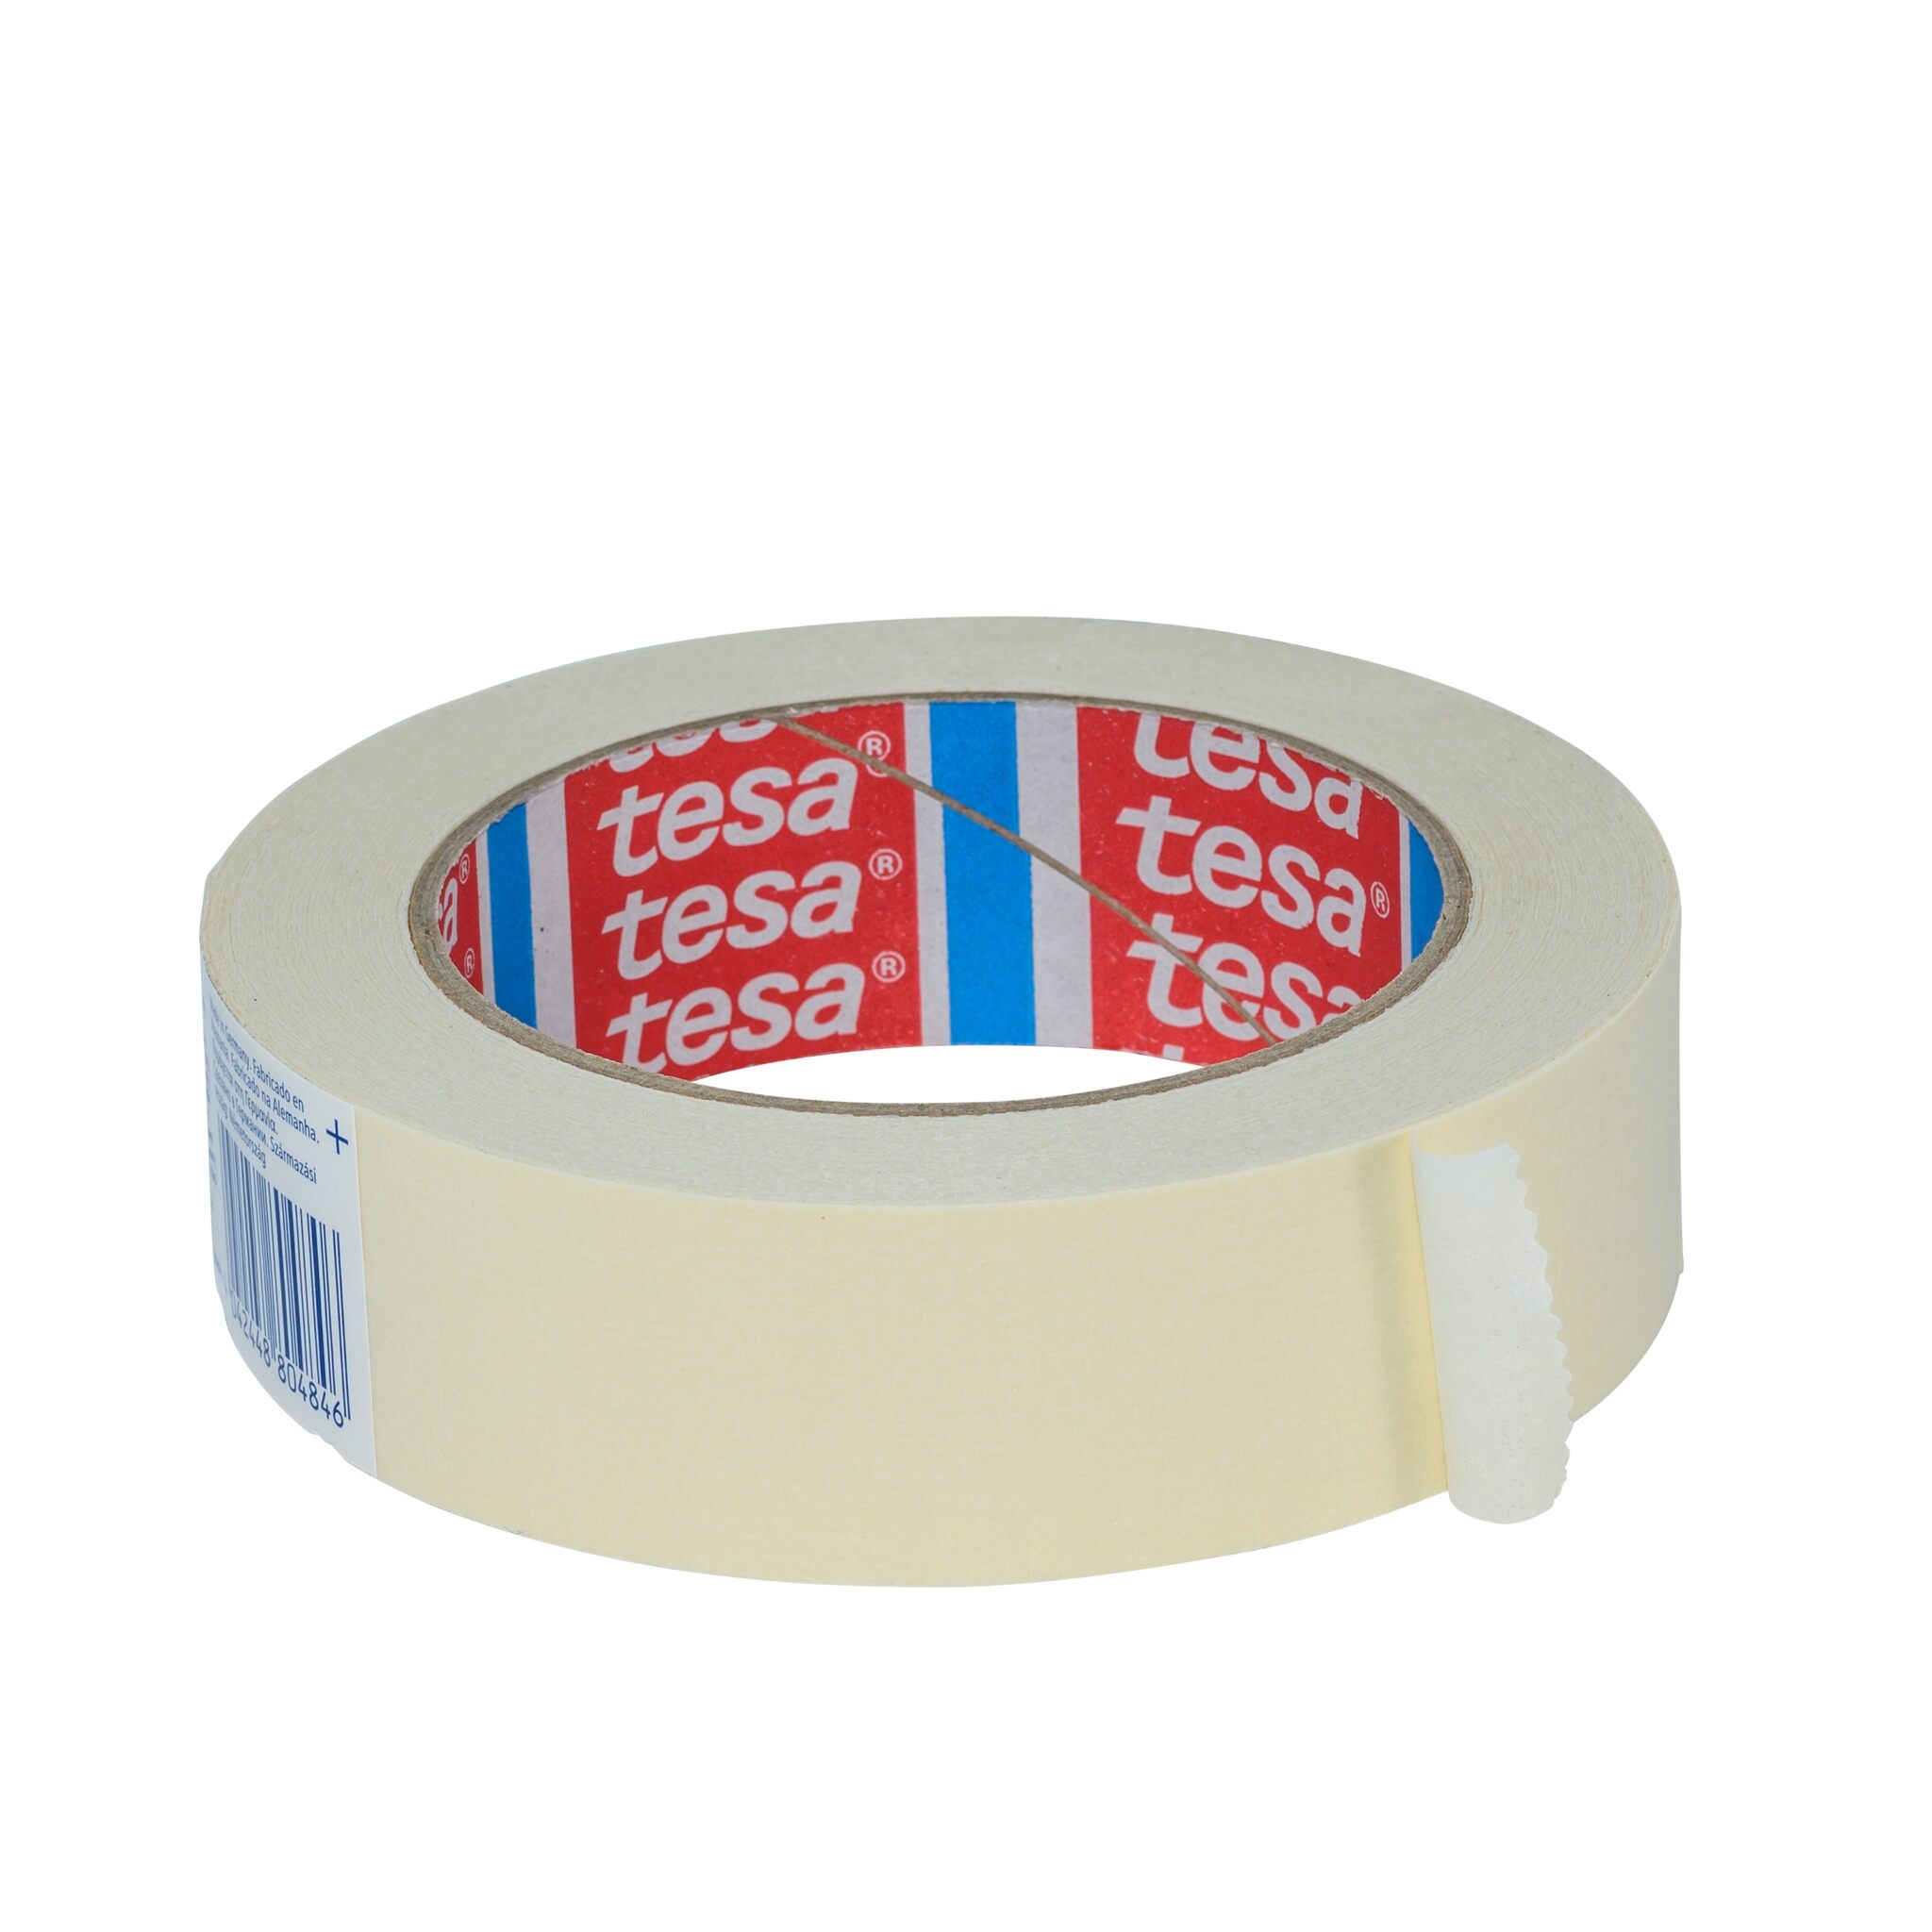 tesa painter's masking tape